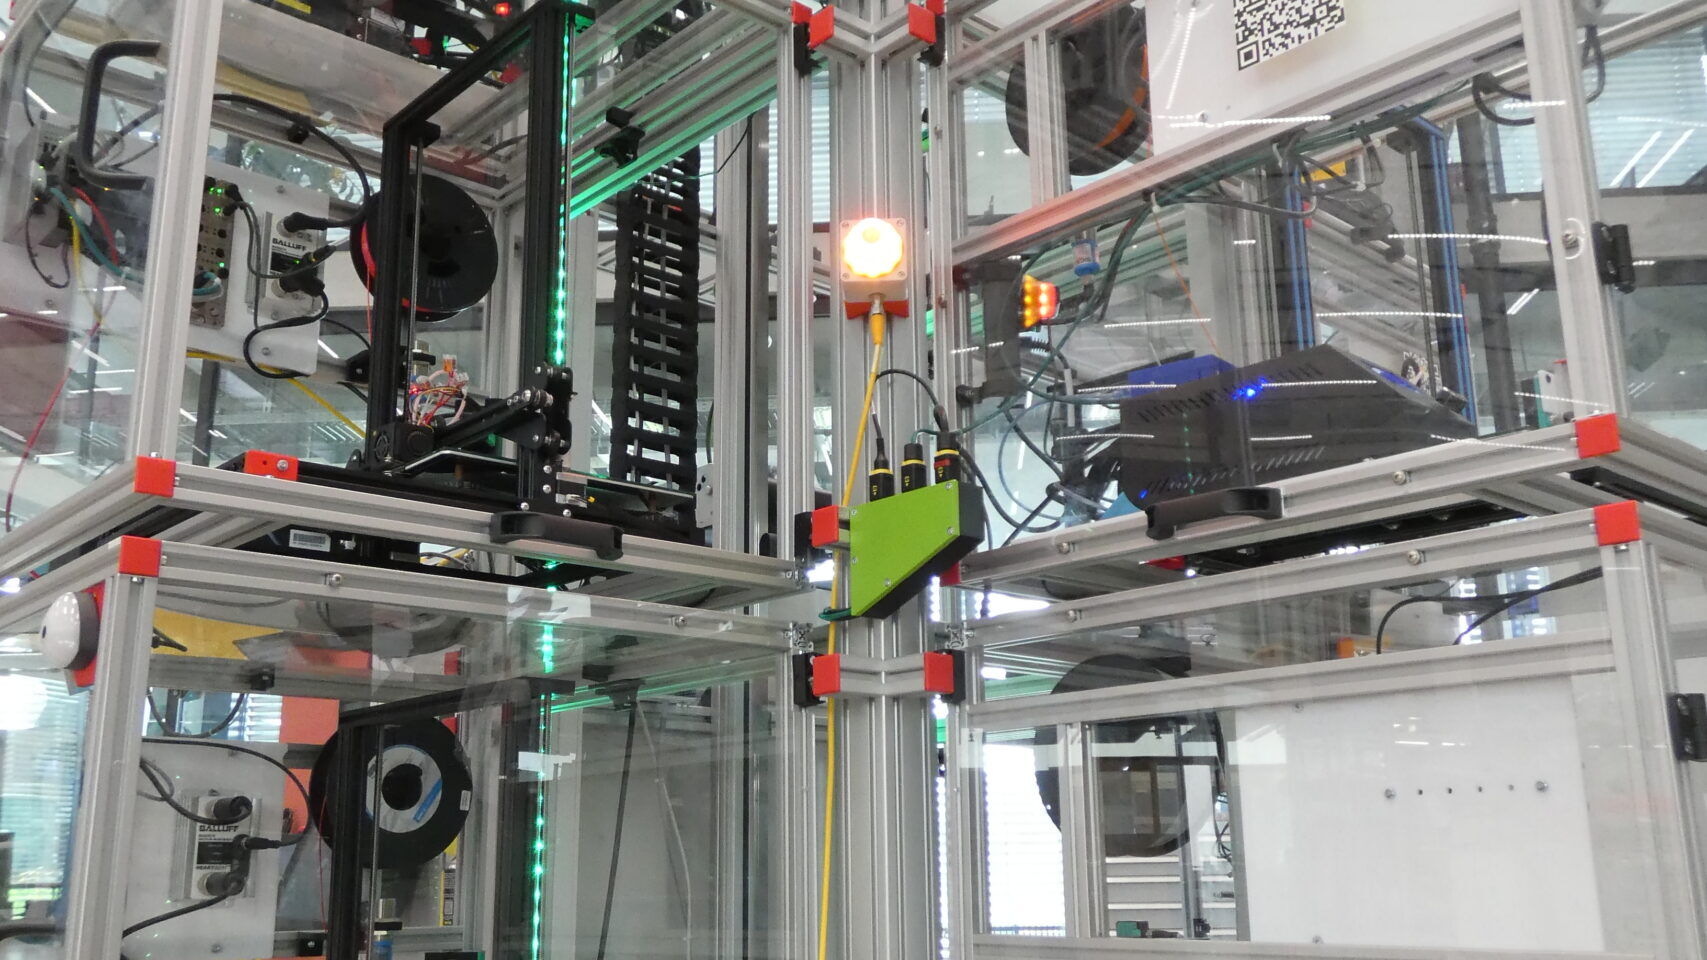 3D spausdintuvas dronų surinkimo linijoje Inovacijų parke Biel/Bienne